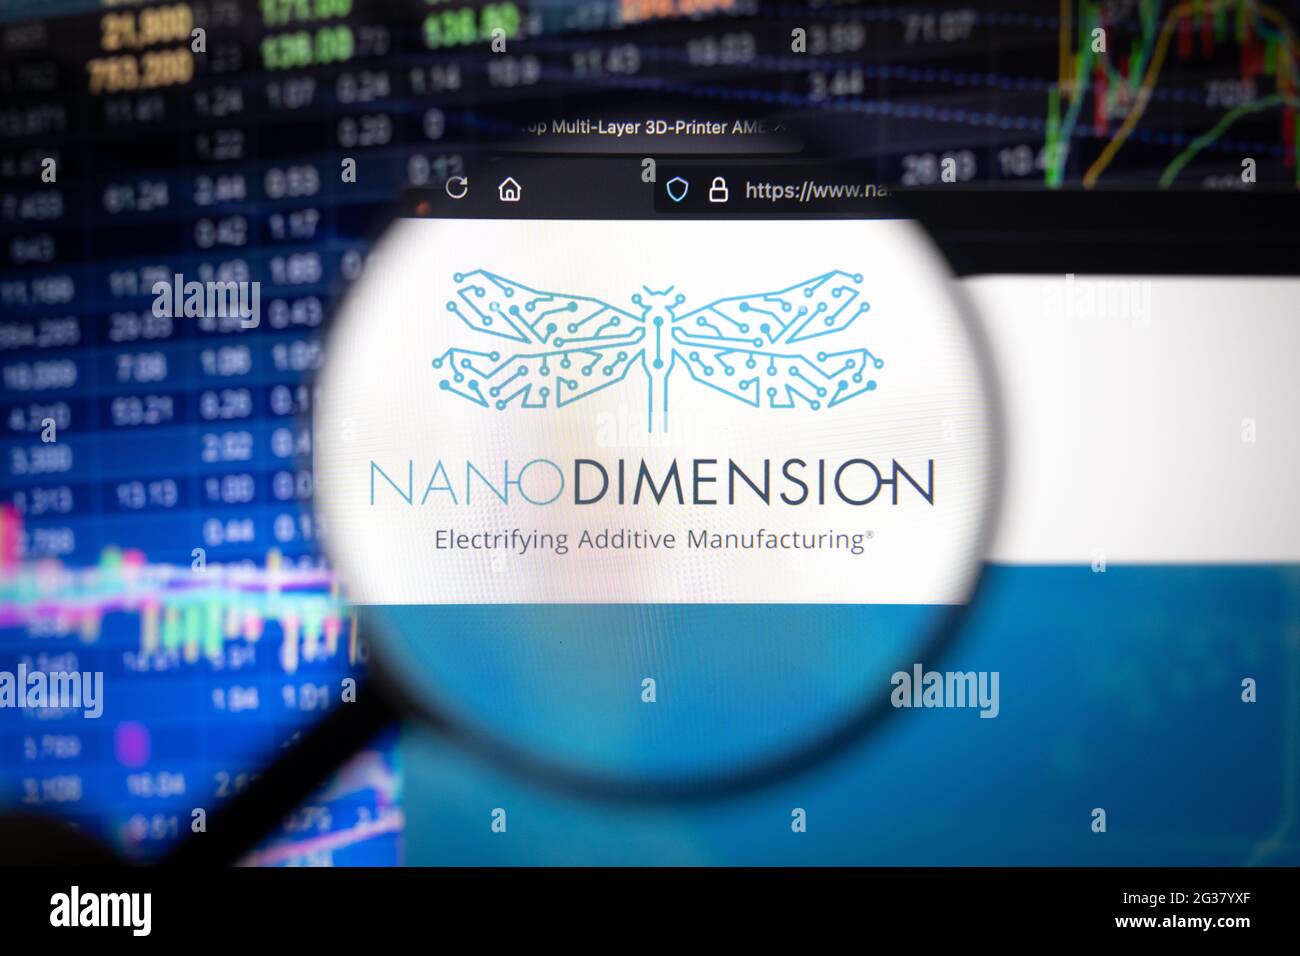 Nano dimension stock